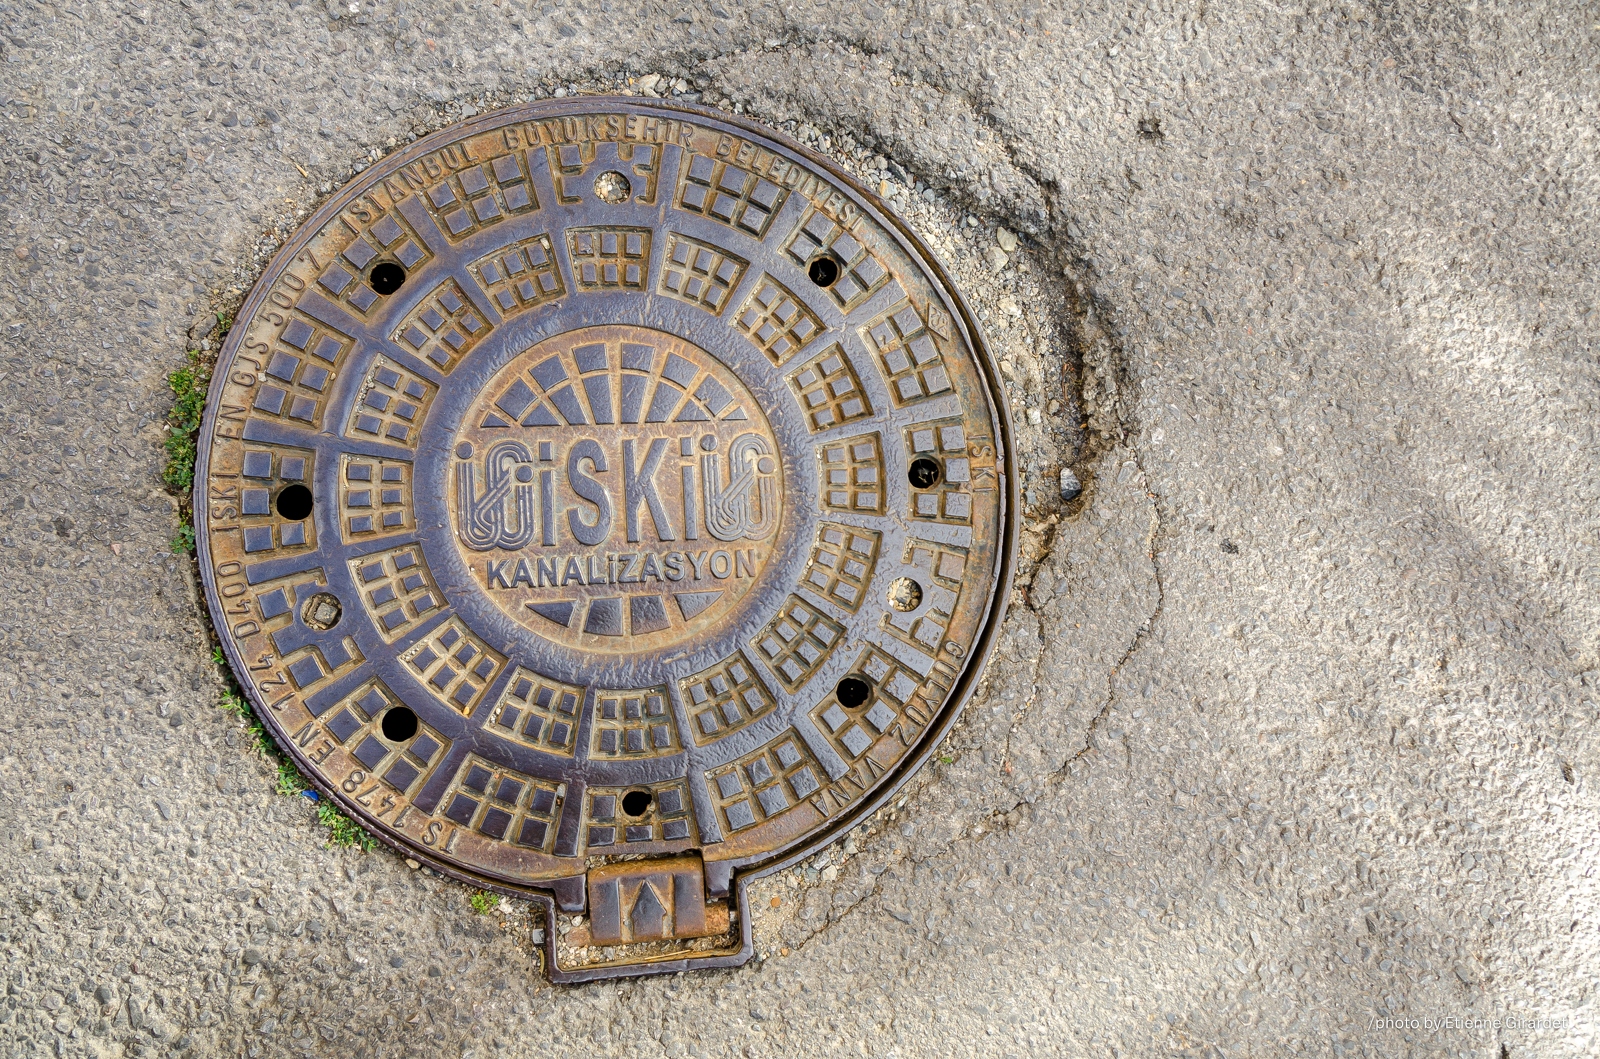 201209_01_DSC_2236-manhole-cover--by-E-Girardet.jpg